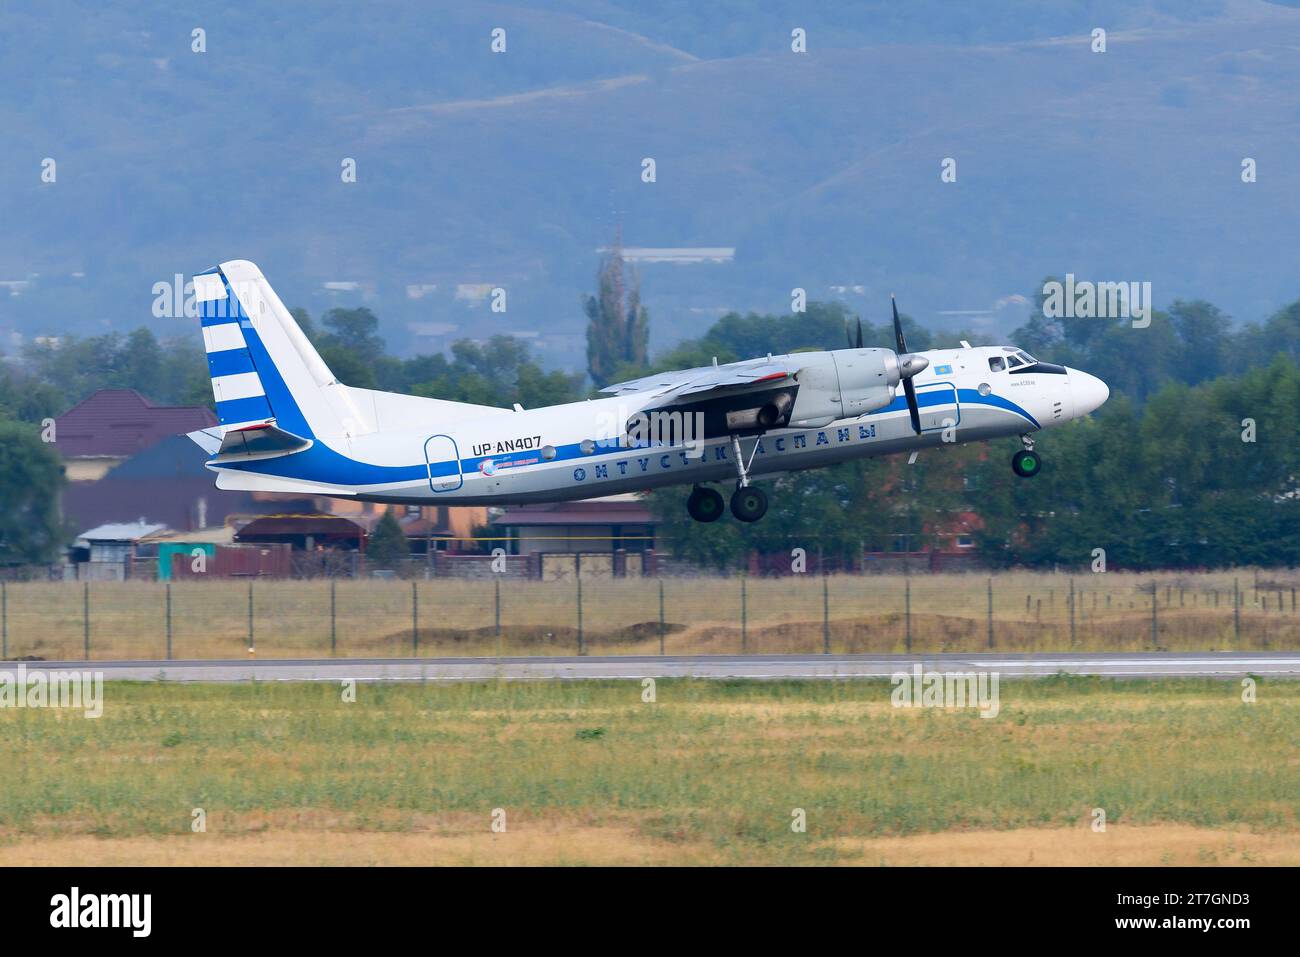 Southern Sky Antonov an-24B-Flugzeug startet. Flugzeug aus der sowjetischen Ära, das den Flughafen Almaty in Kasachstan verlassen hat. Das sowjetische HiSky-Turboprop-Flugzeug Antonov 24. Stockfoto